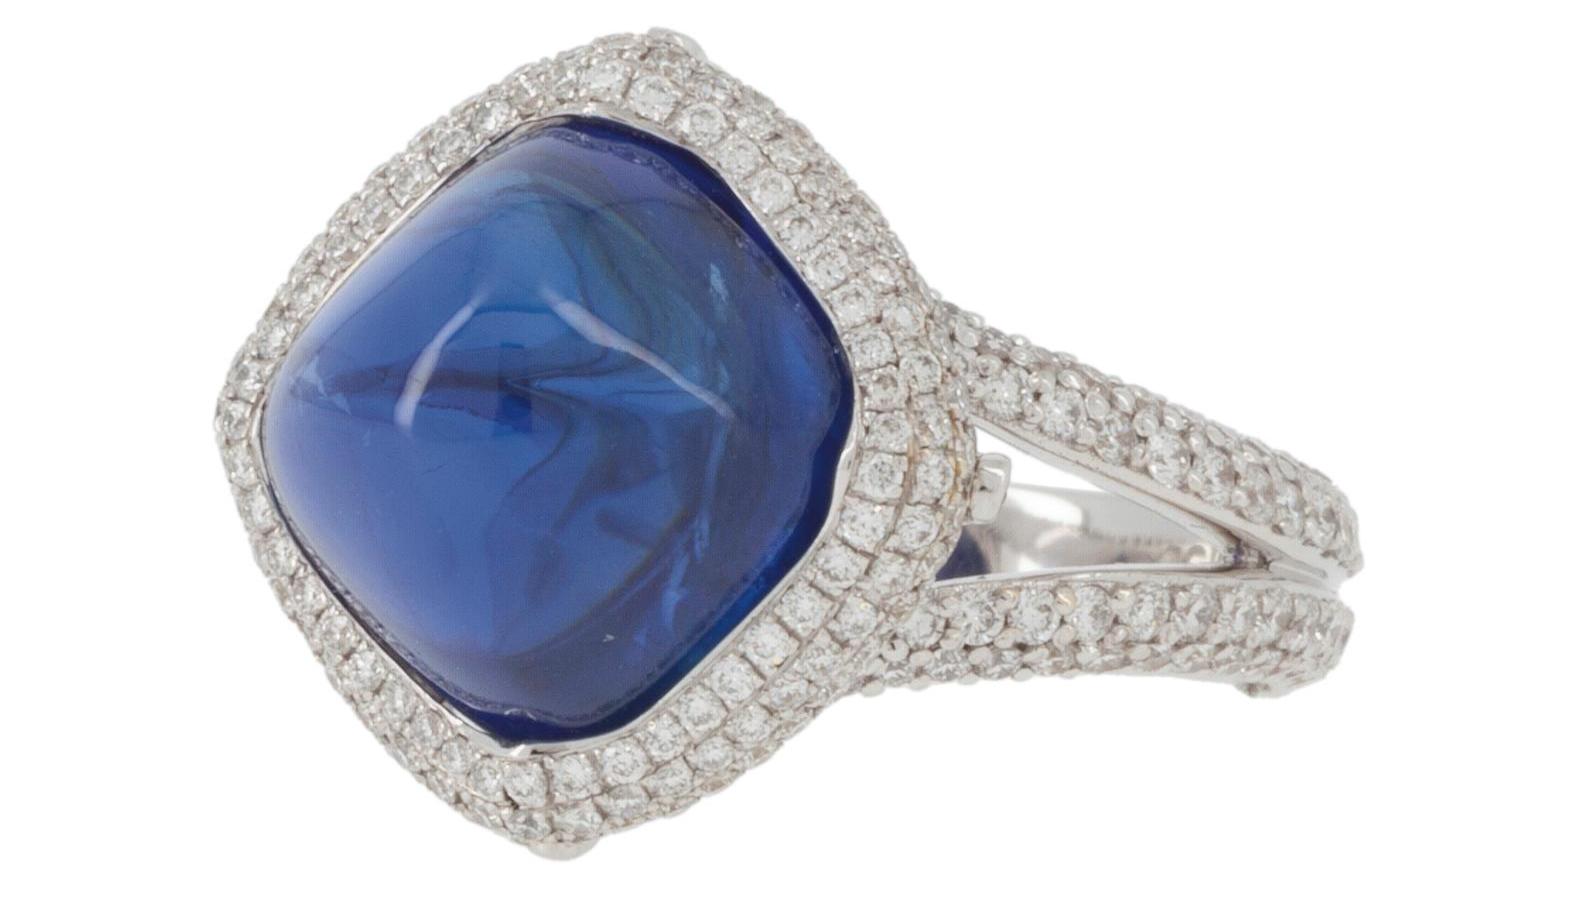 Bague sertie d’un pavage de diamants (env. 1,40 ct) entourant un saphir bleu royal,... Le saphir birman, ce rêve bleu